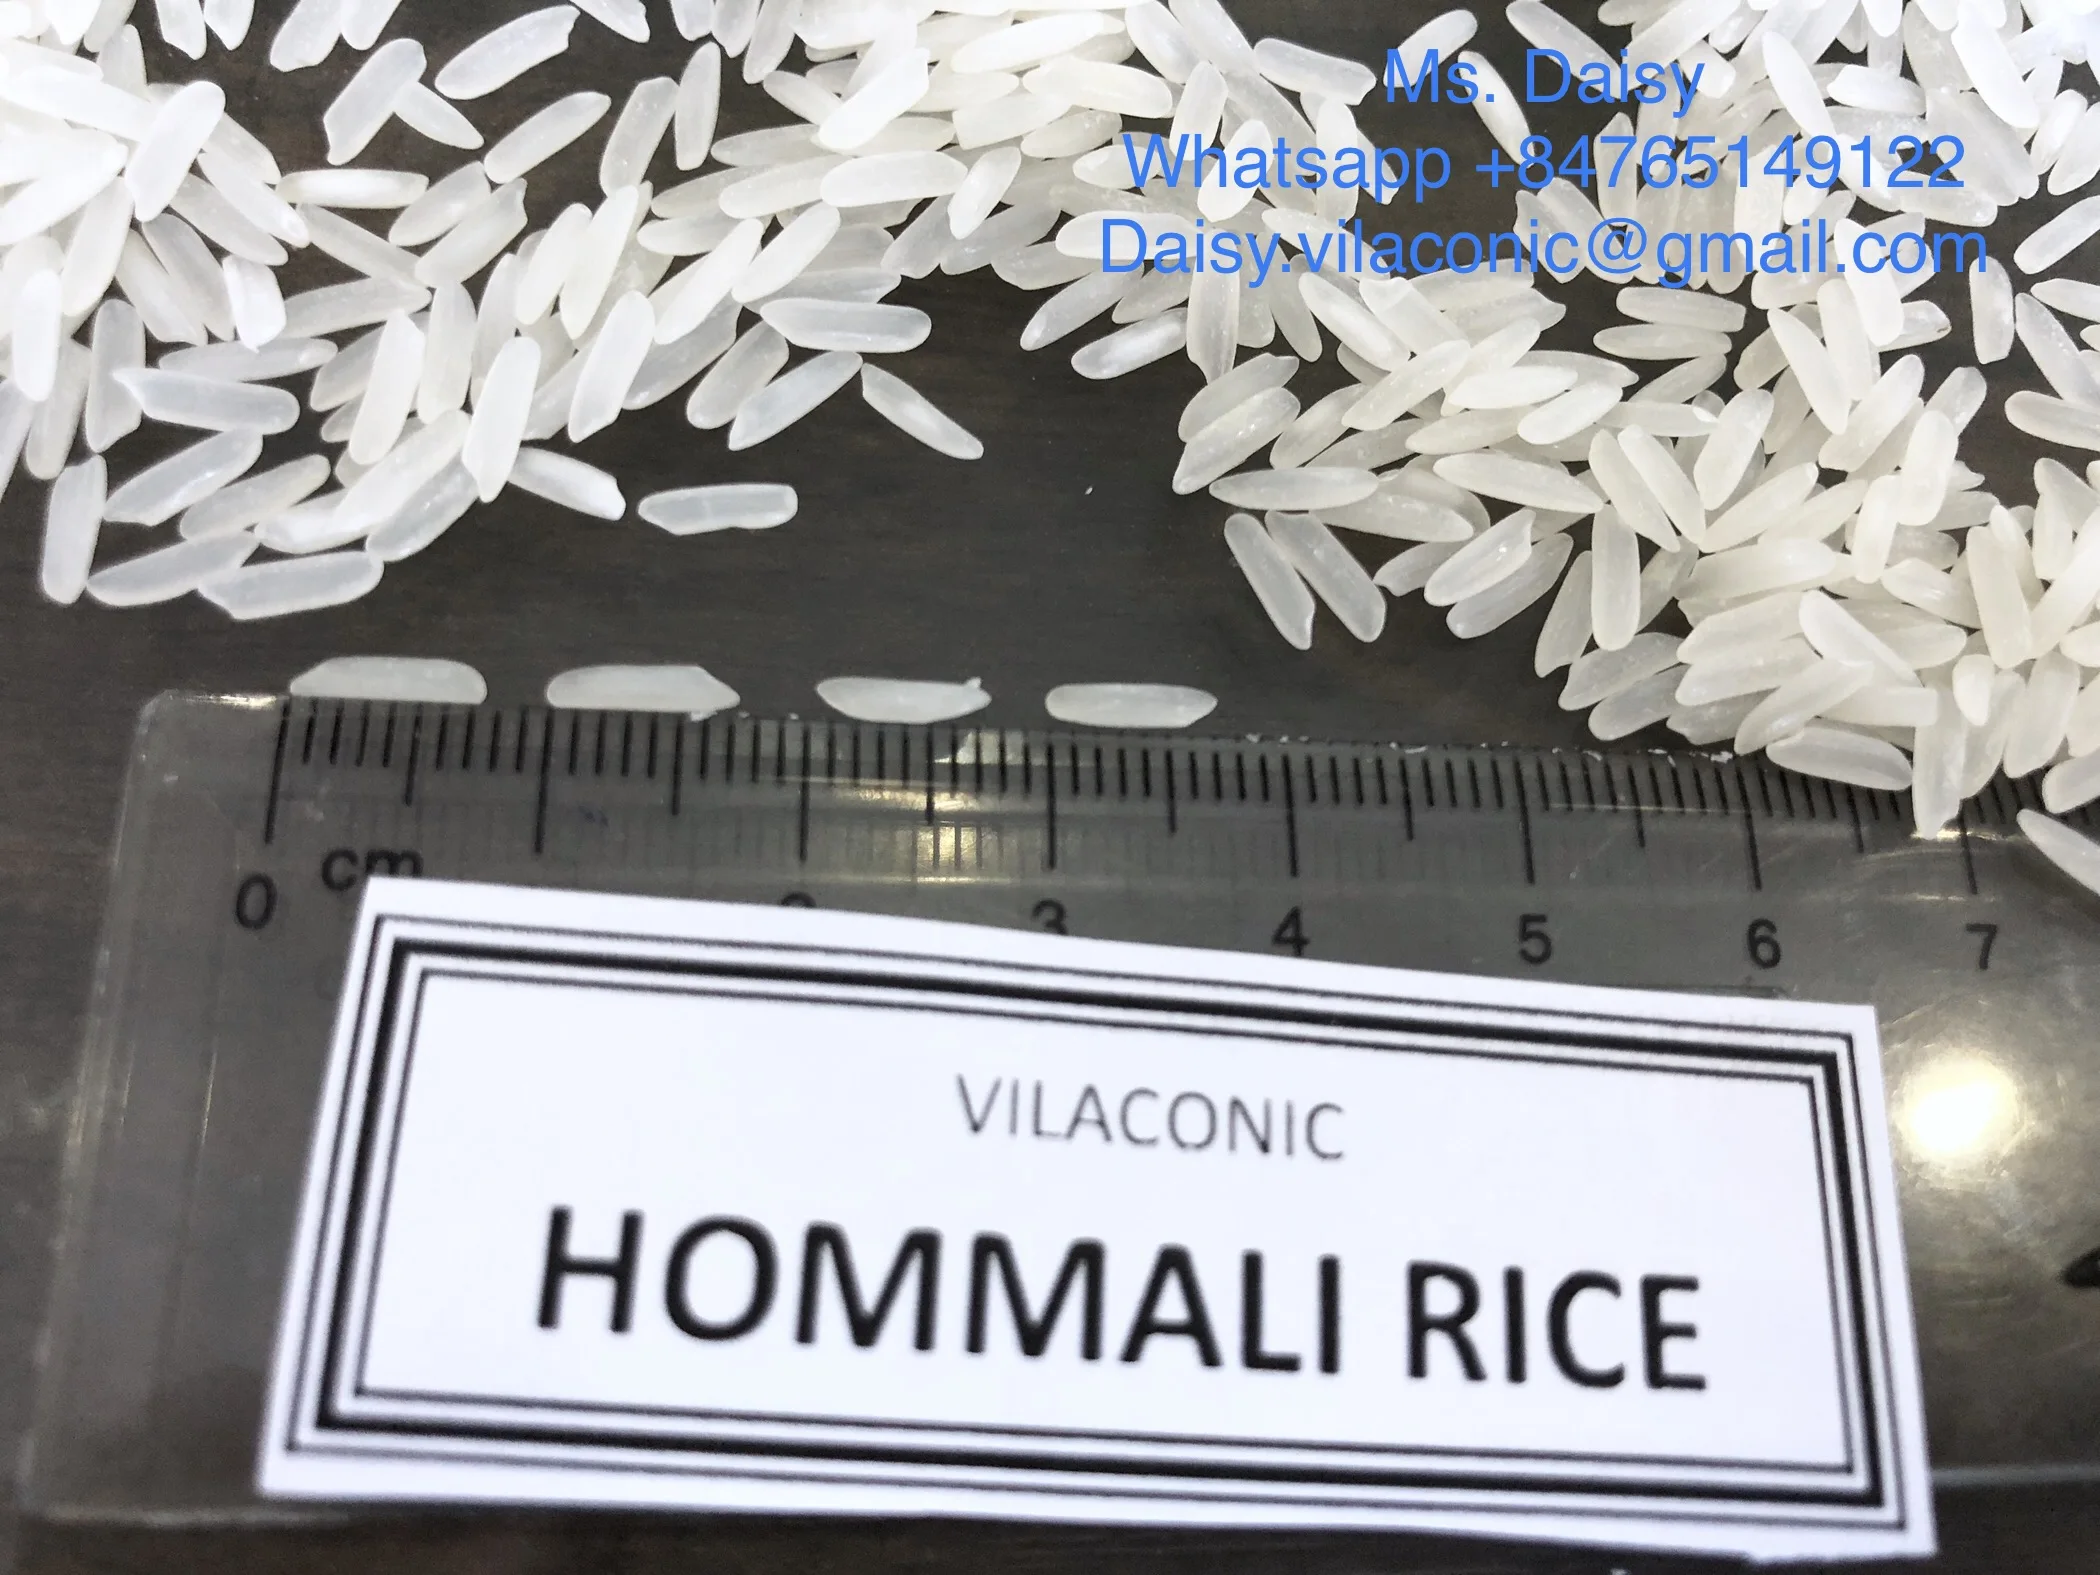 
Hom mali rice Homali riz Long grain riz Perfume riz - WHATSAPP +84765149122 